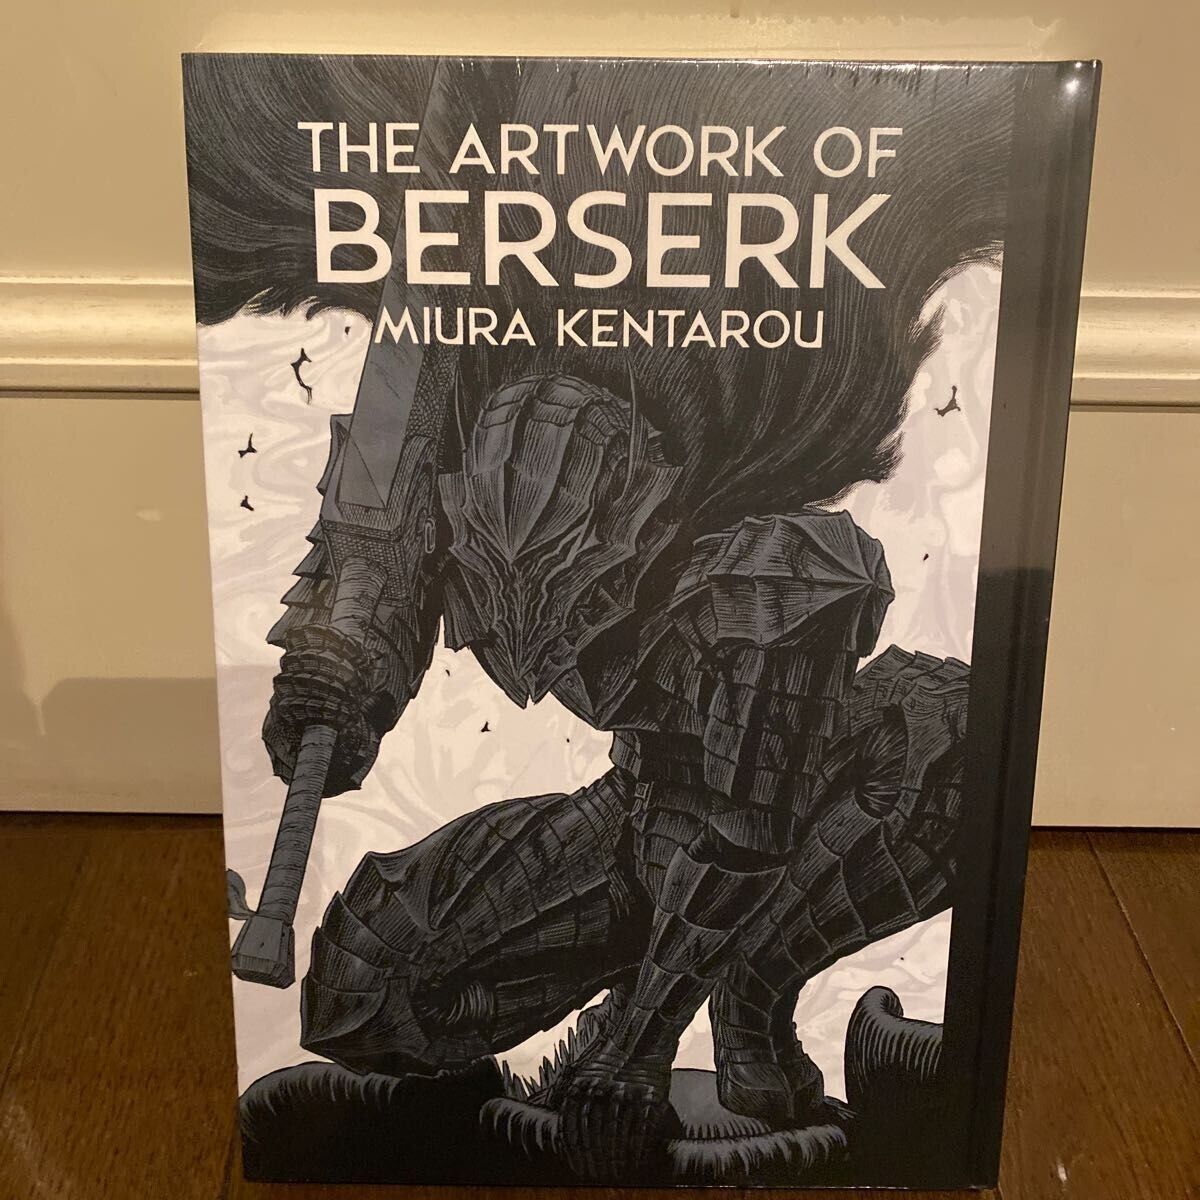 Berserk Exhibition The Artwork of Berserk Official Illustration Art Book Miura K